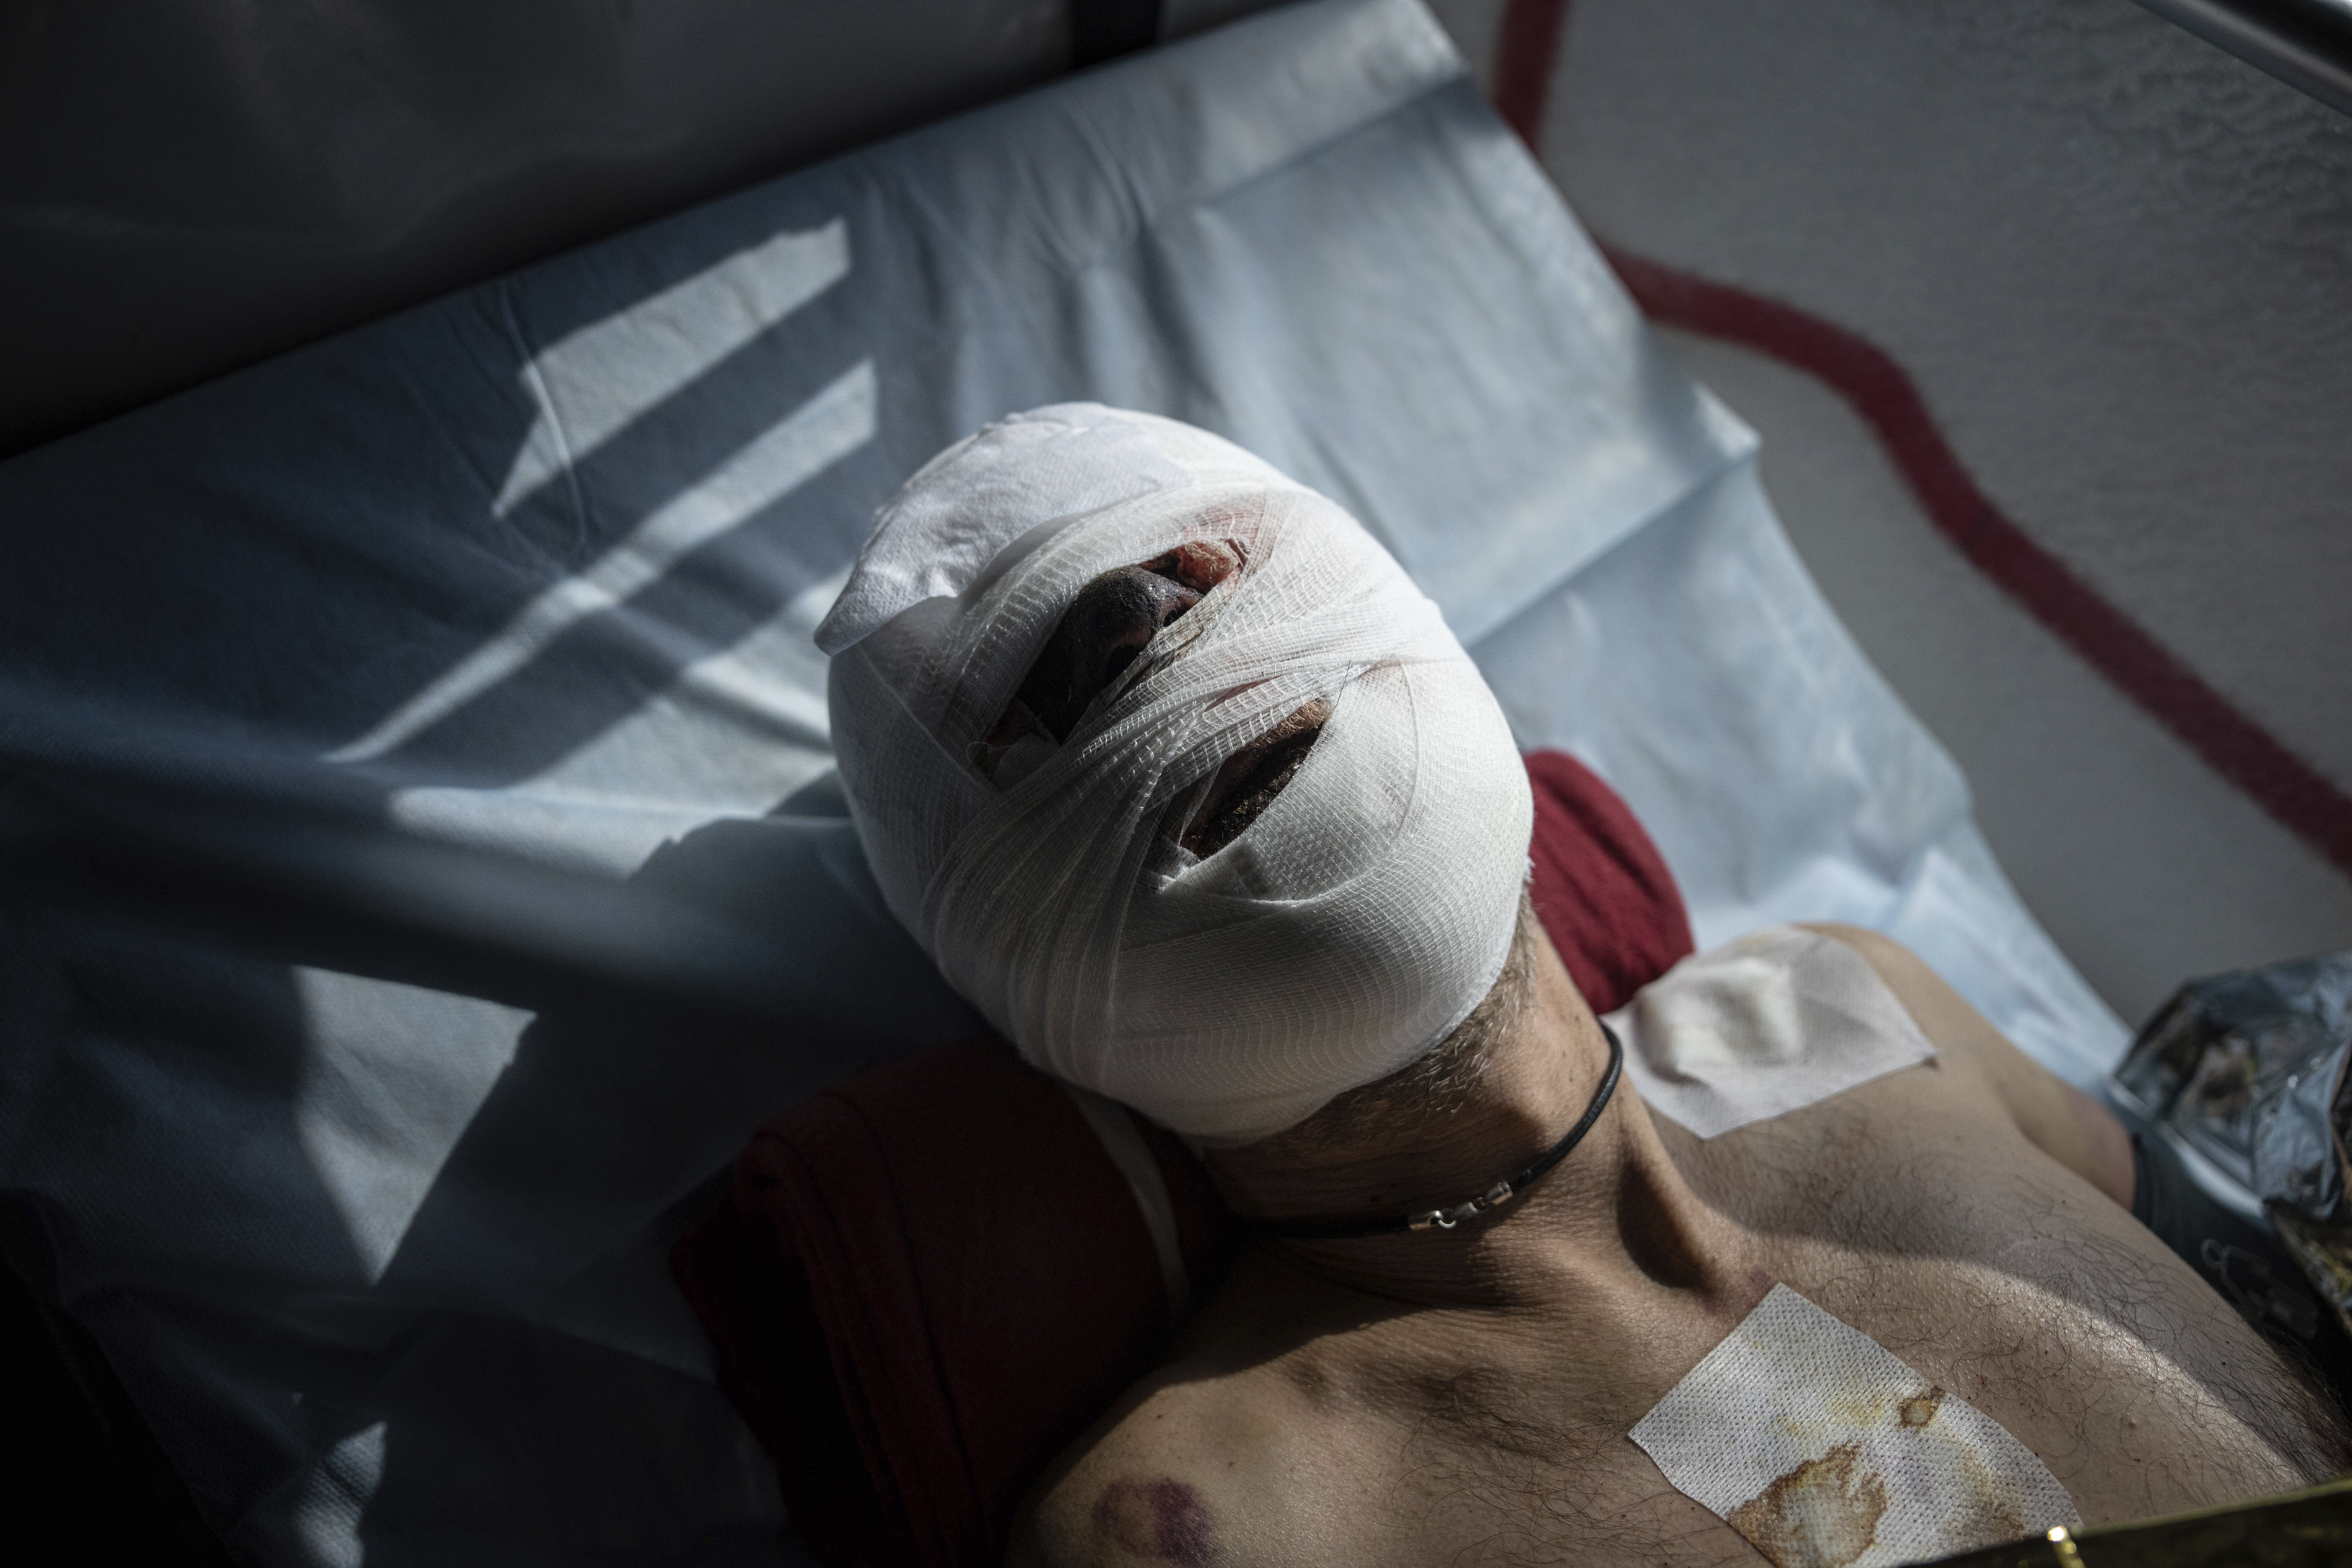 “Una gira por el infierno”: las fotos de los soldados ucranianos heridos y evacuados en la batalla de Bakhmut